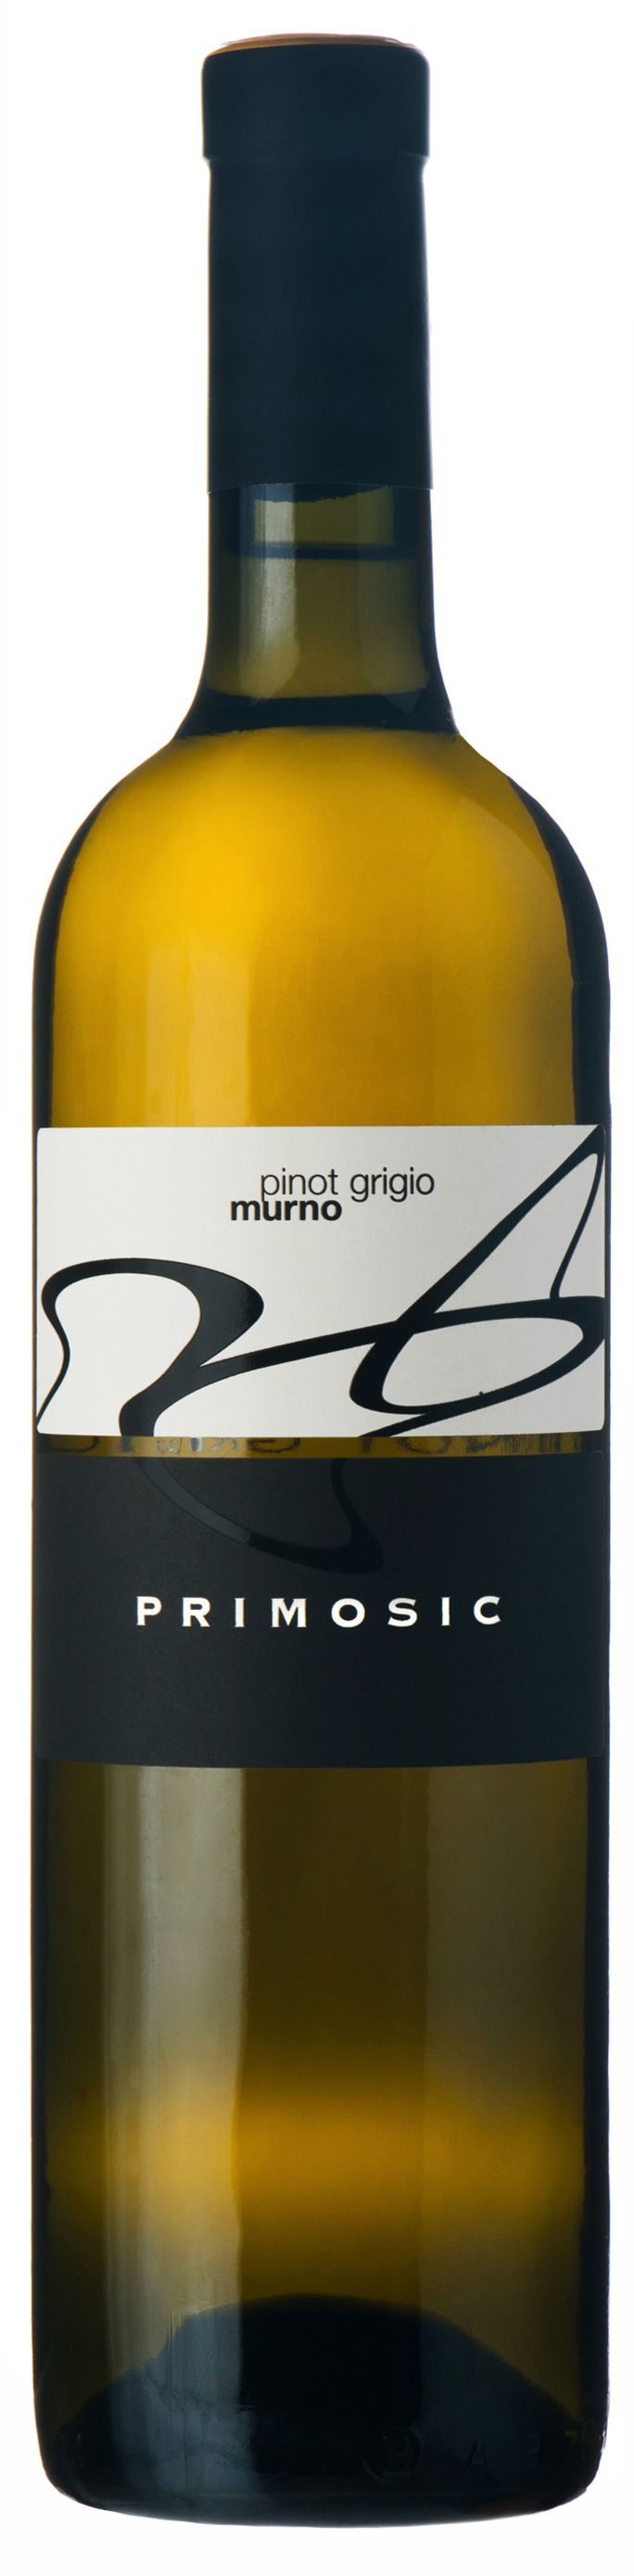 Primosic, Pinot Grigio Murno, 2015